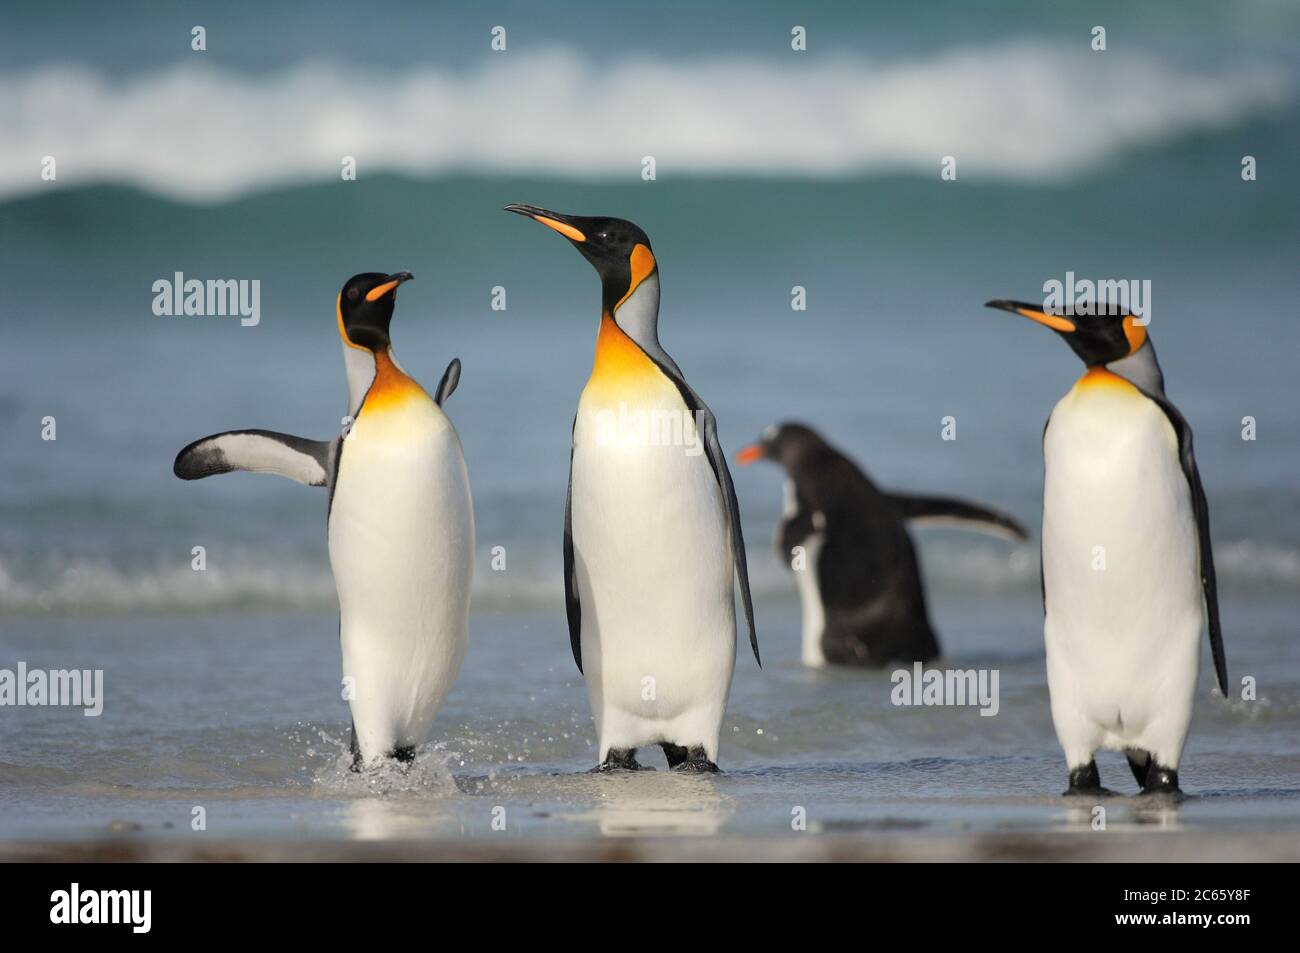 Comenzando y regresando de sus viajes forrajeos los pingüinos rey (Aptenodytes patagonicus) a menudo se reúnen en grupos. Este hábito potencialmente reduce el riesgo de ser capturado por sus depredadores acuáticos, por ejemplo el león marino y la orca. Foto de stock